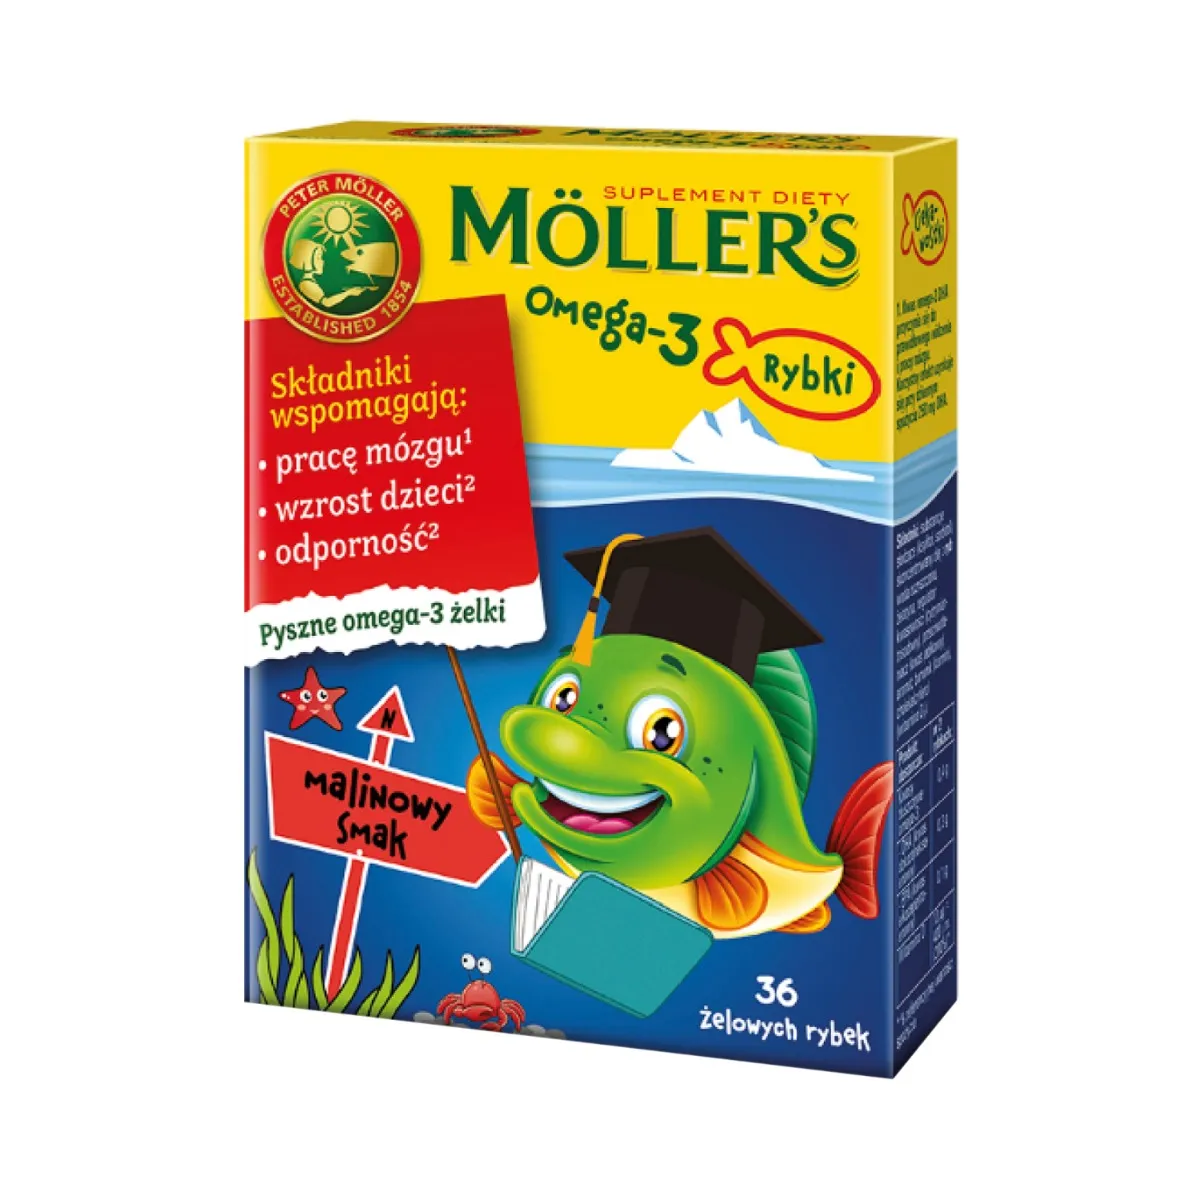 Mollers Omega-3 Rybki, smak malinowy, 36 żelek